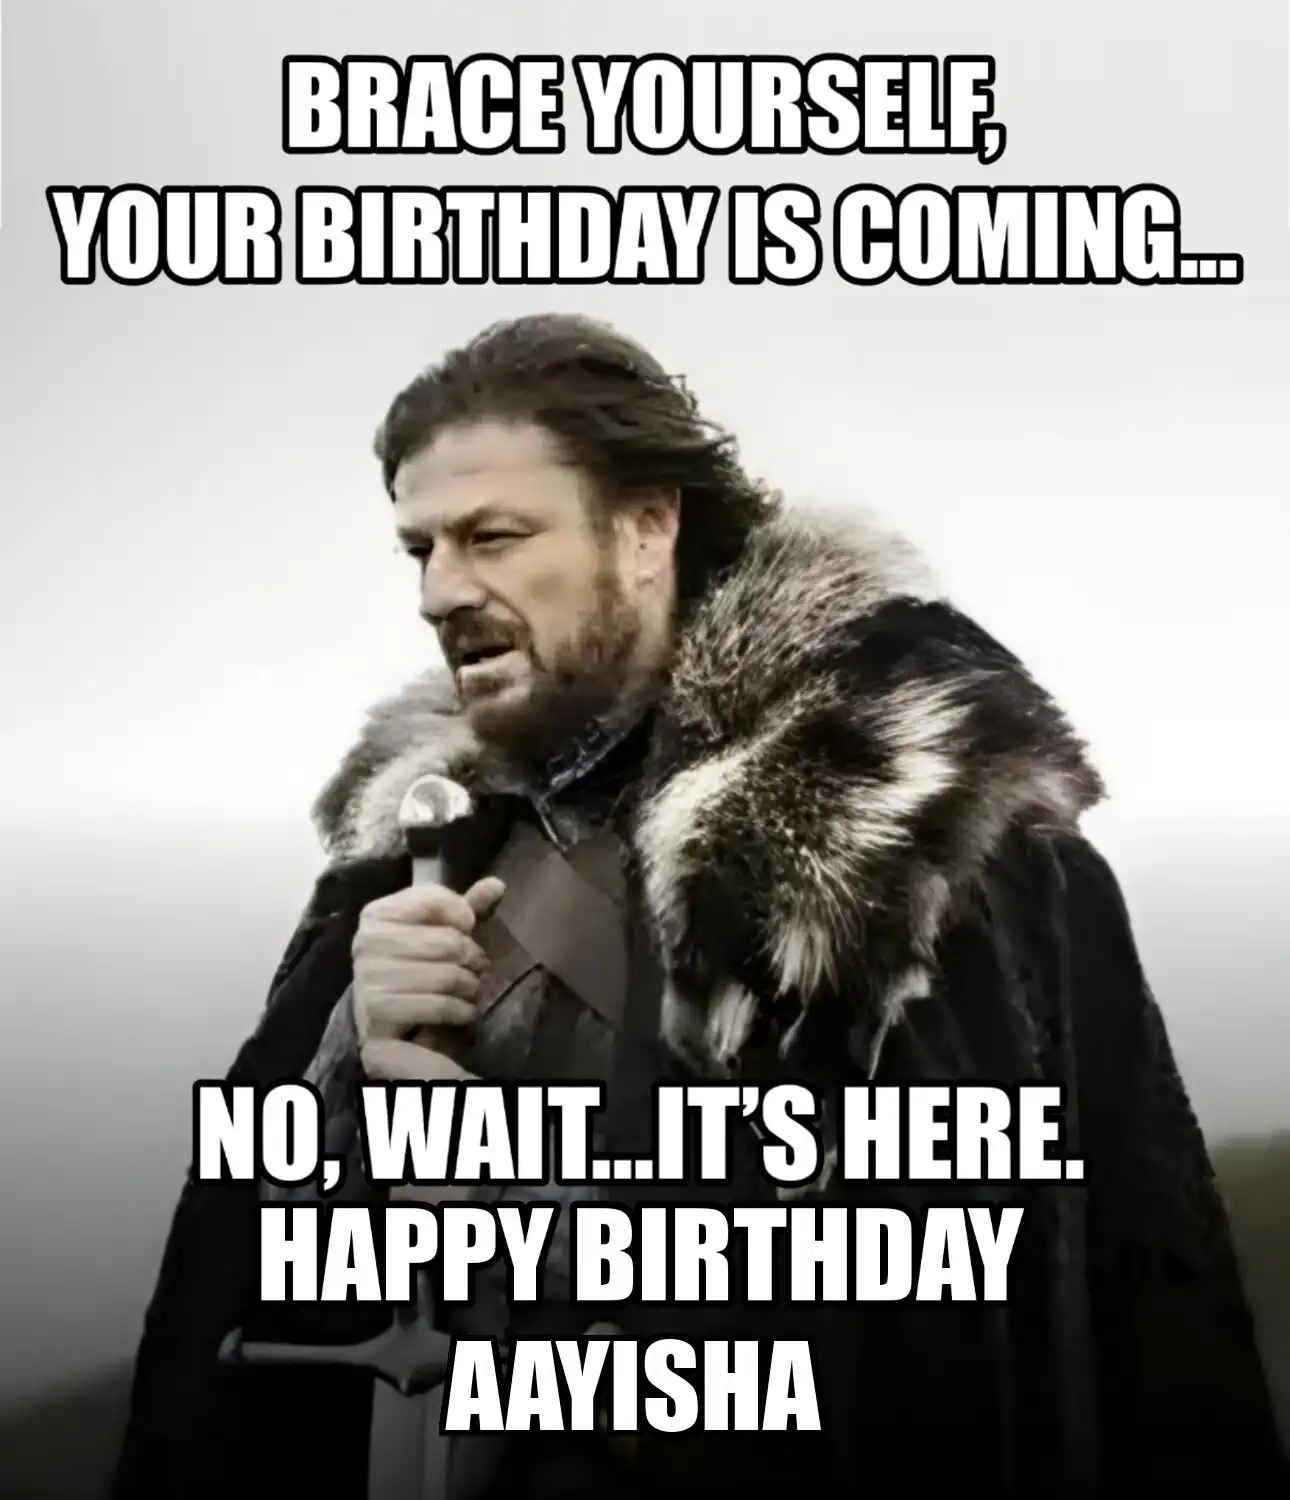 Happy Birthday Aayisha Brace Yourself Your Birthday Is Coming Meme